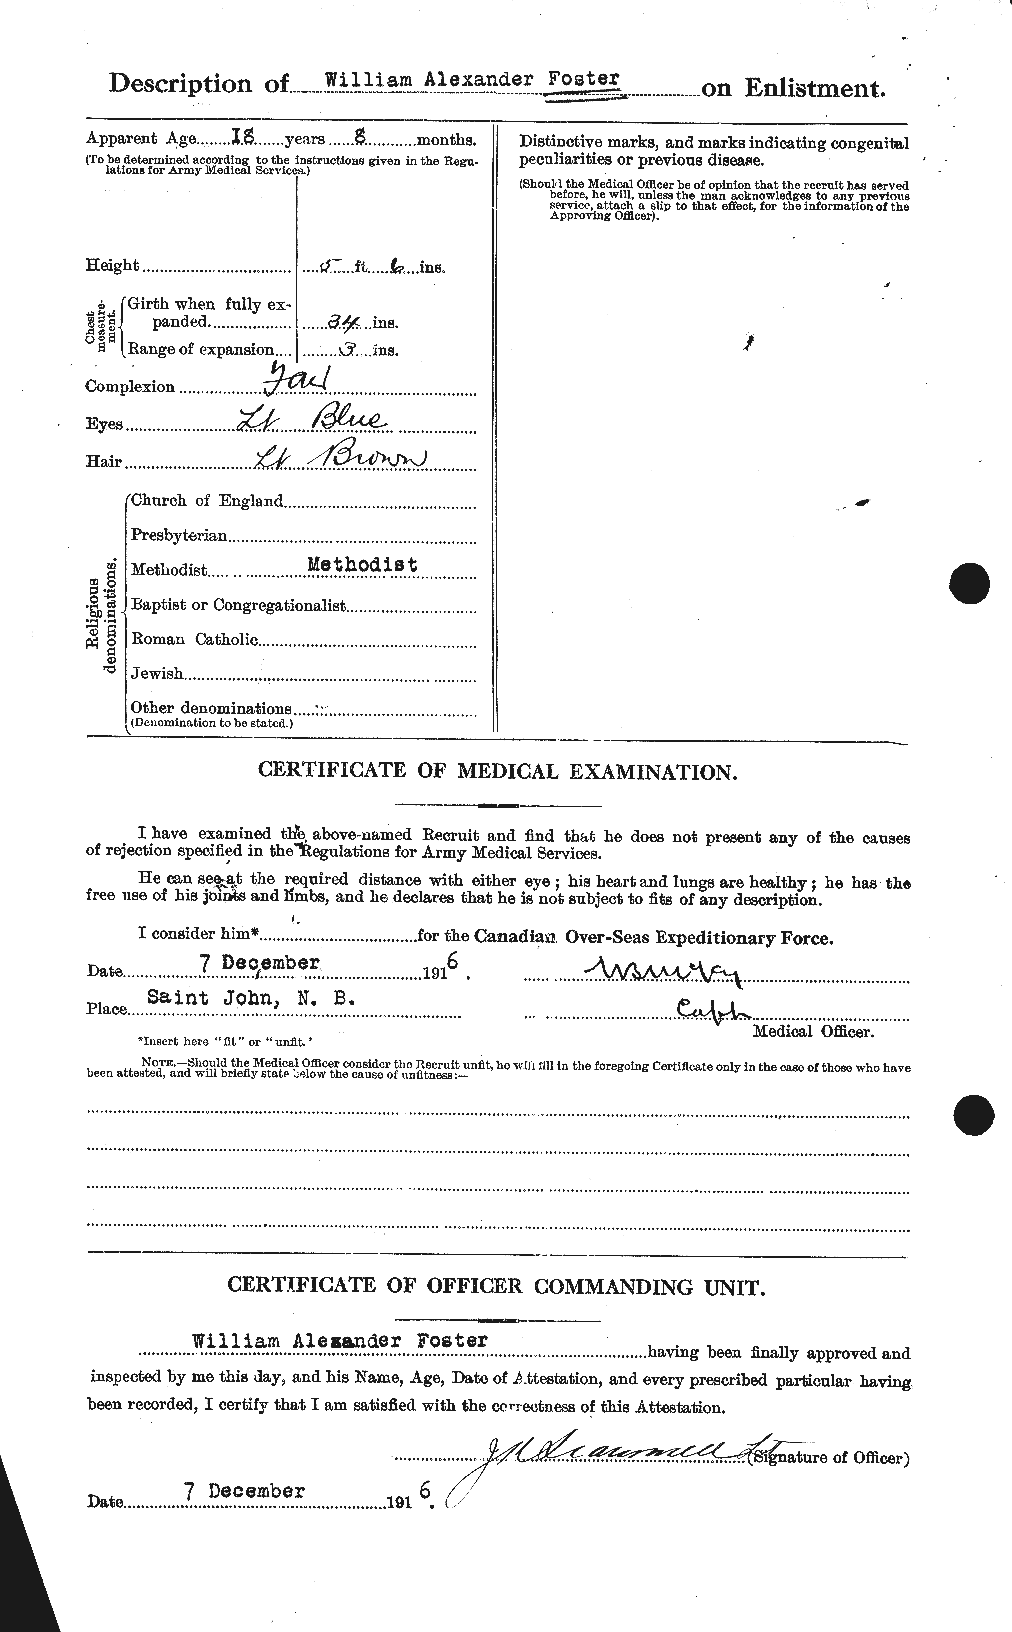 Dossiers du Personnel de la Première Guerre mondiale - CEC 328725b